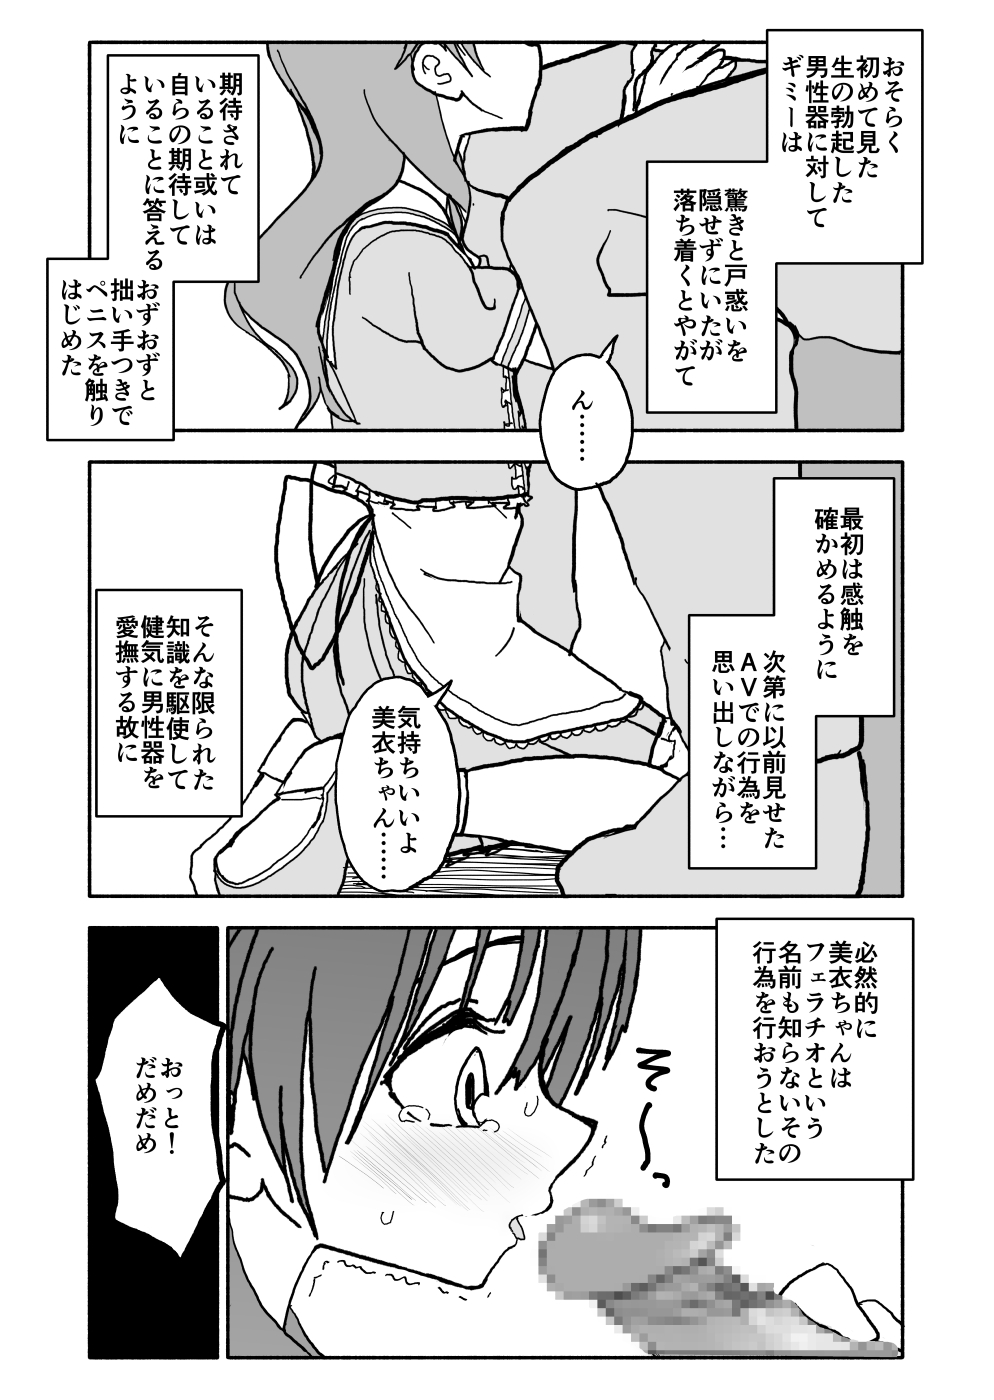 [Futotta Obasan] Okashi Tsukuri Idol ☆ Gimi ! Ecchi na Himitsu no Tokkun manga page 42 full